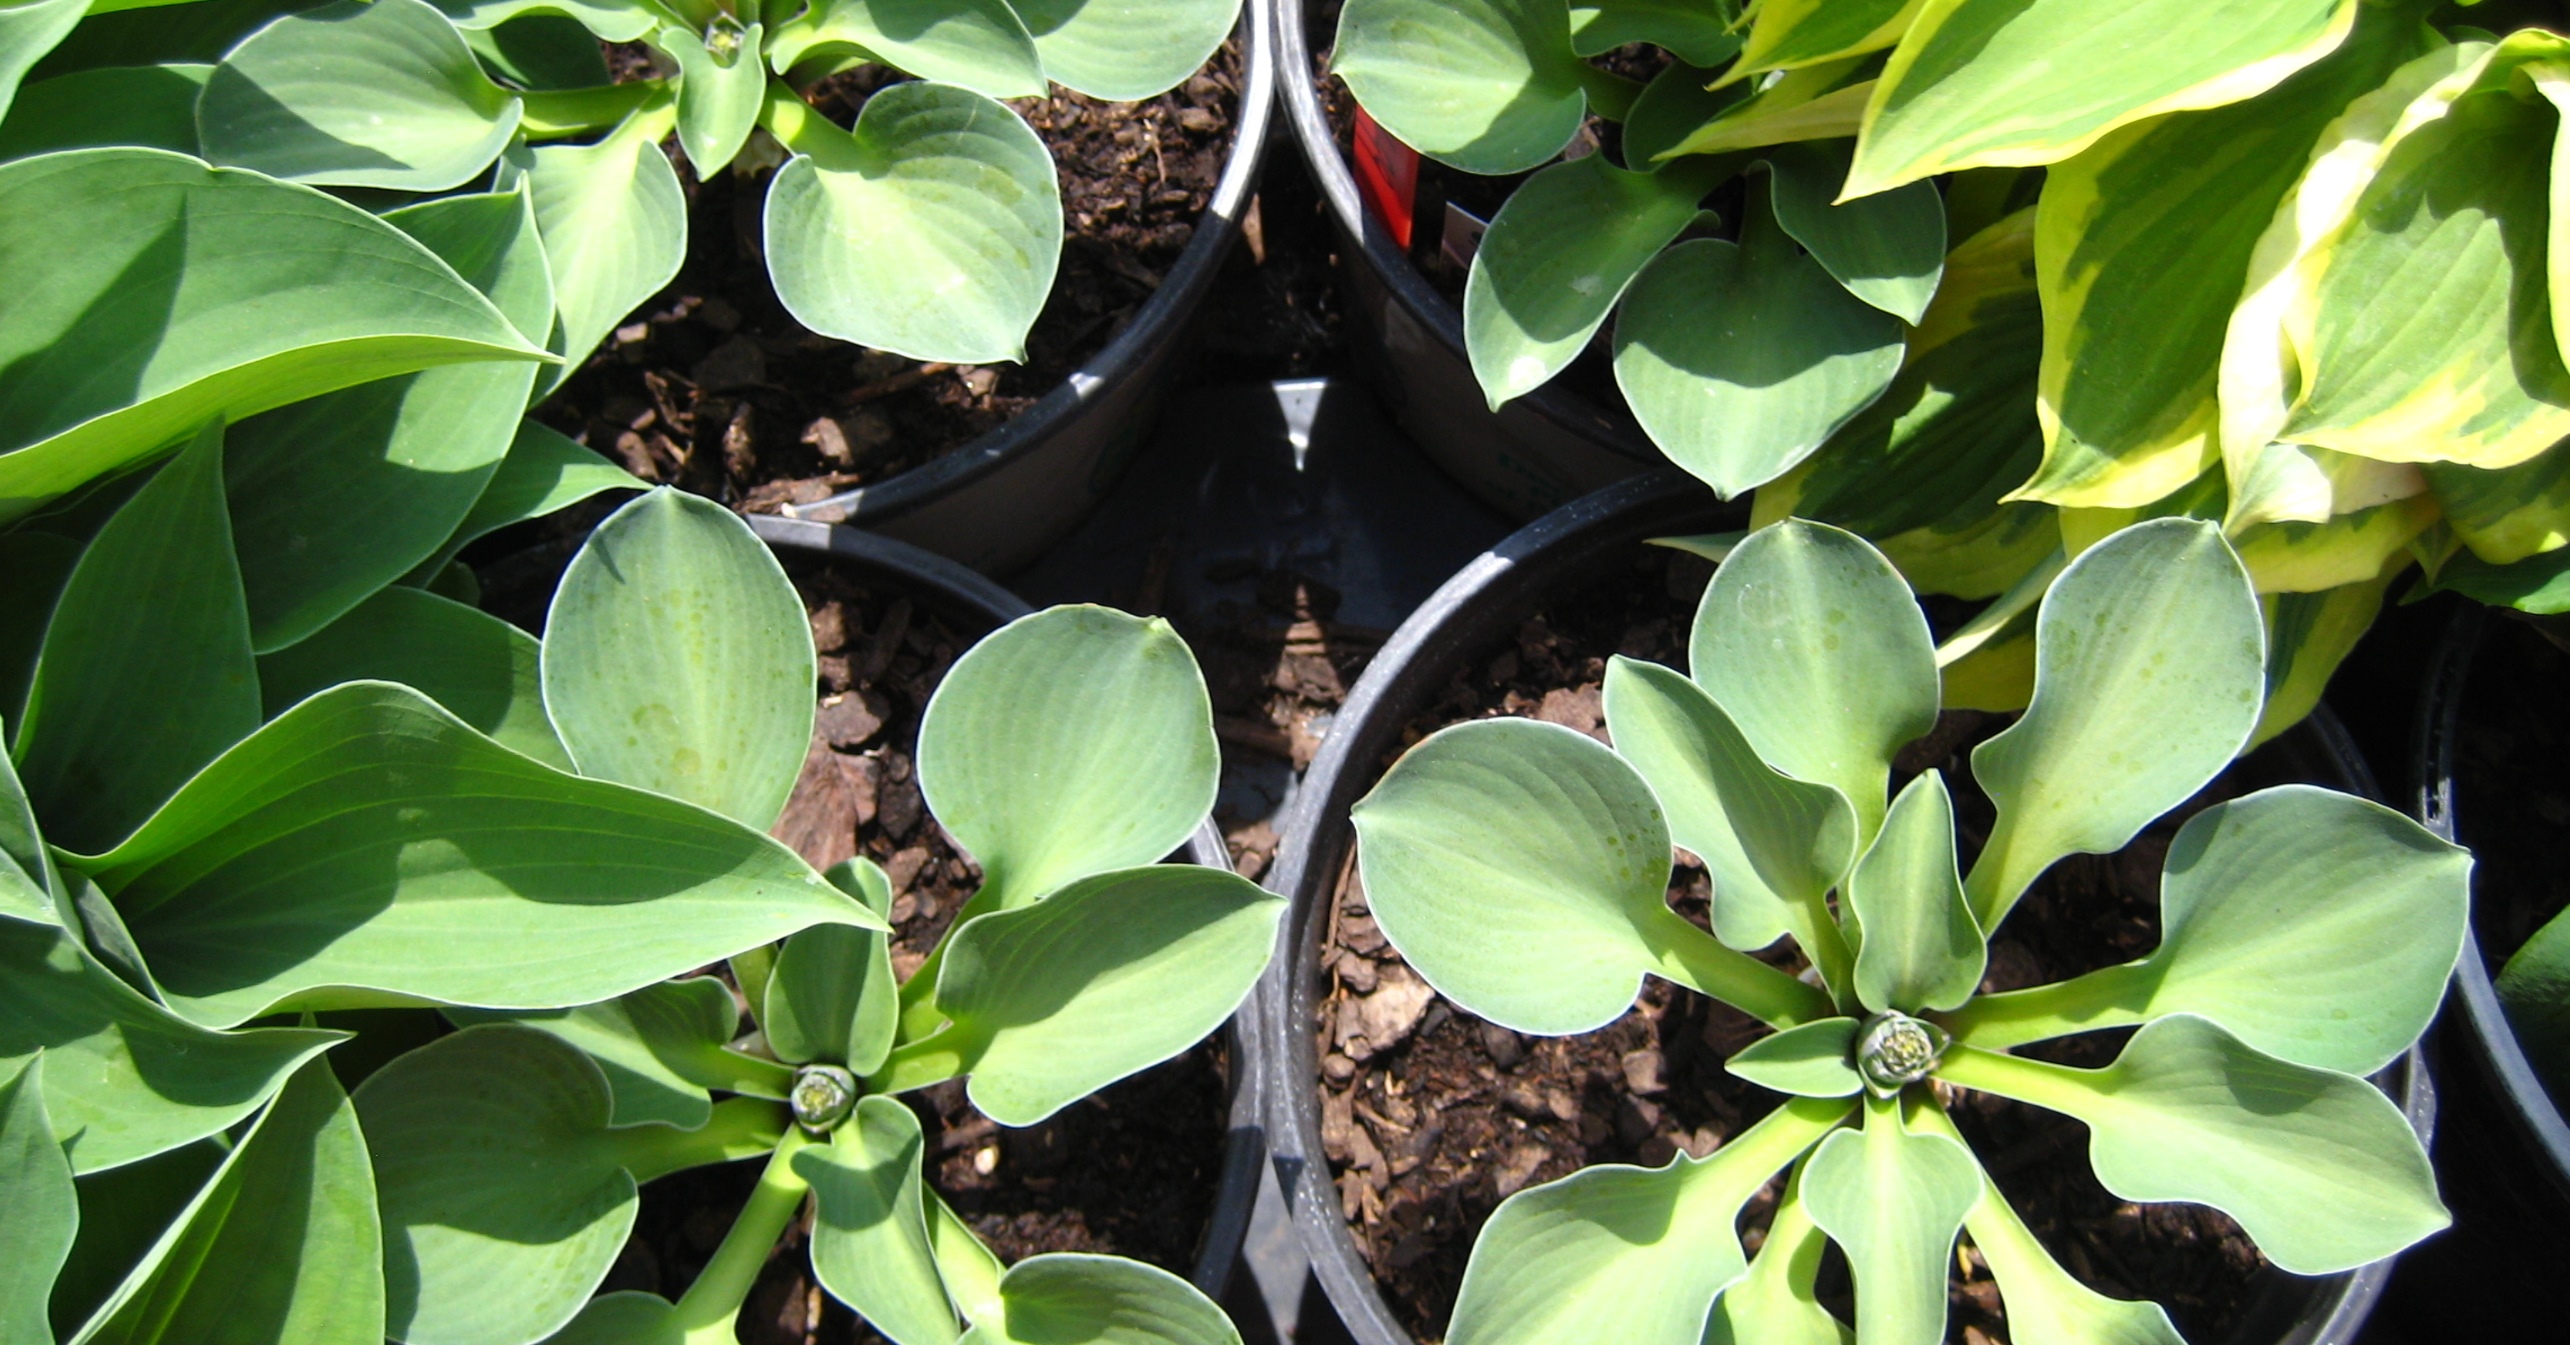 hosta plants growing in pots